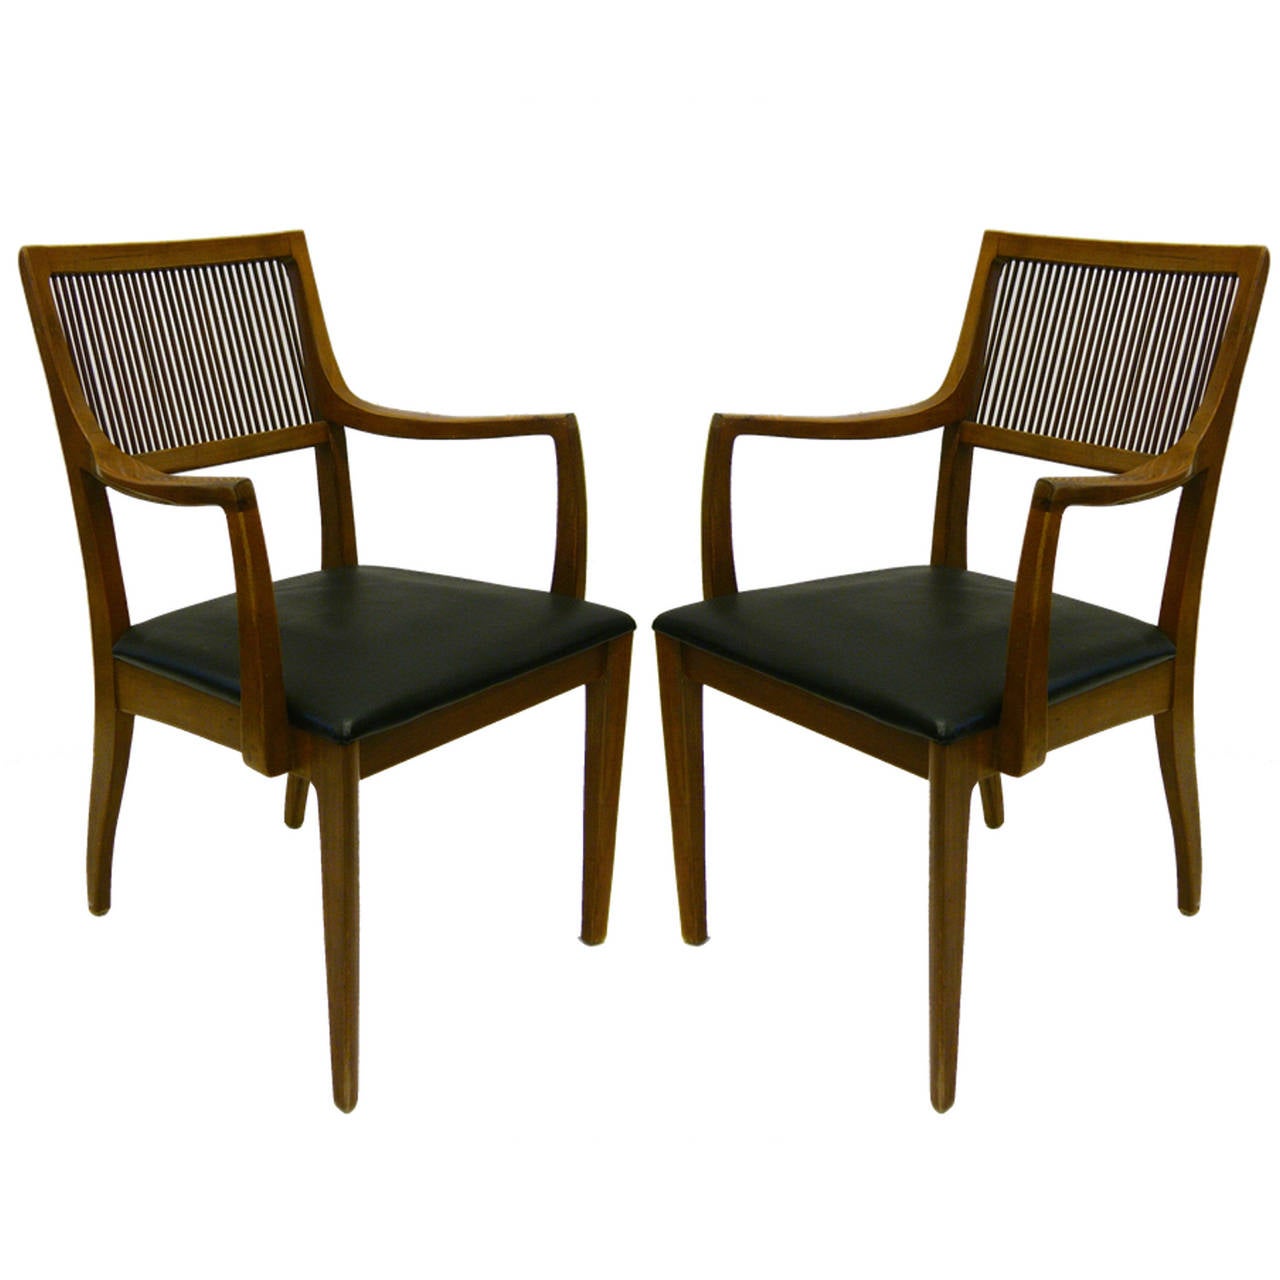 American Set of Eight Chairs by John Van Koert for Drexel